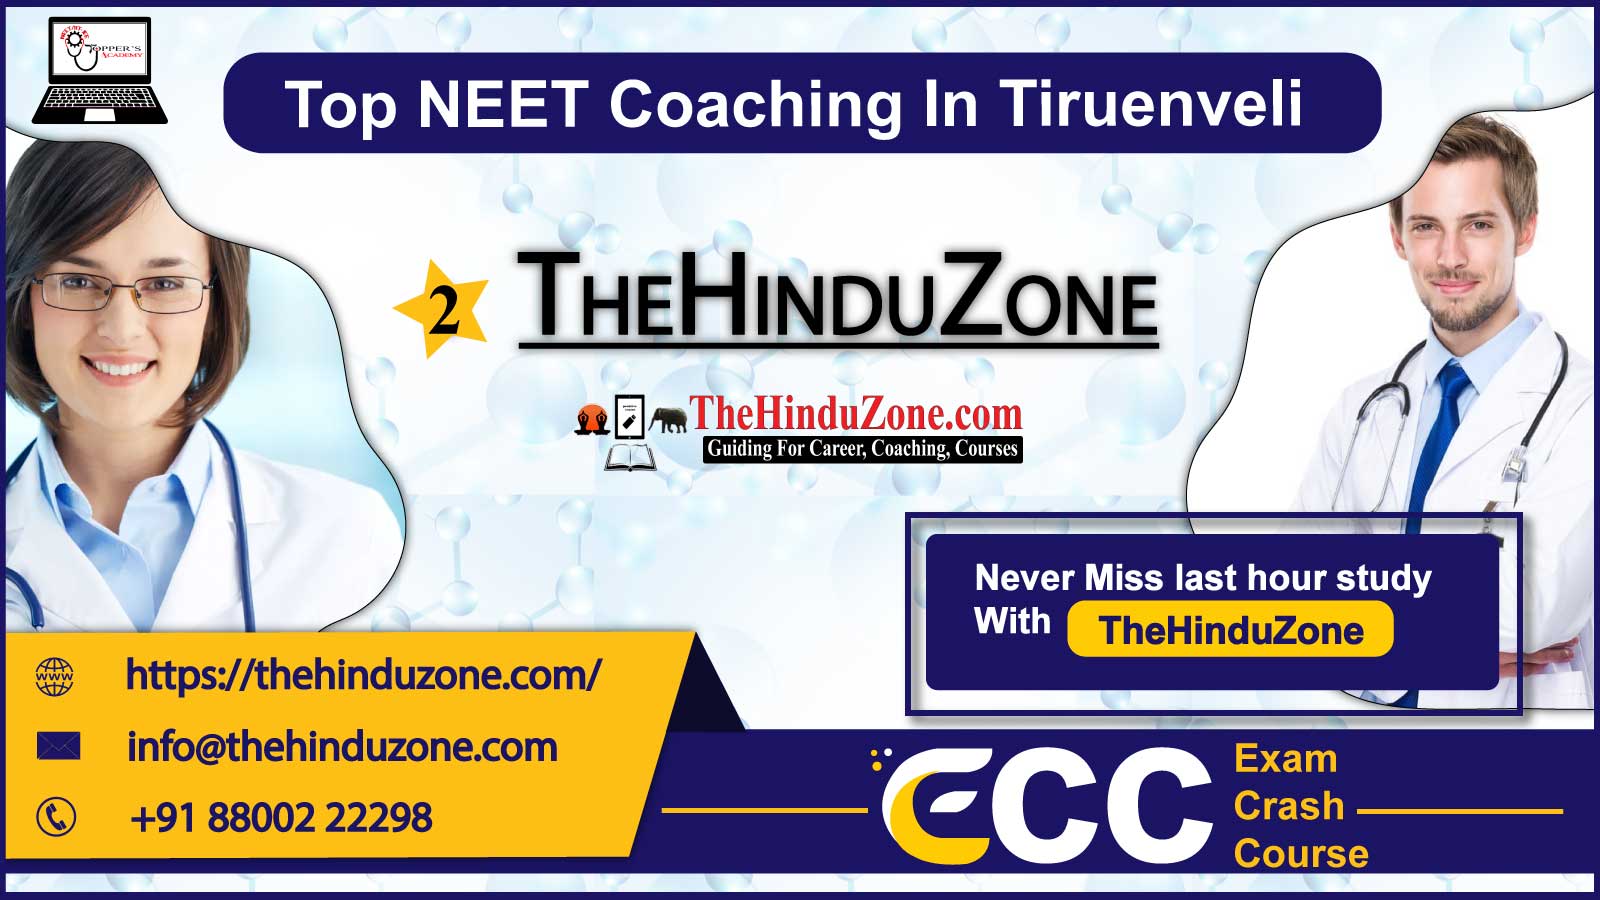 The Hinduzone NEET Coaching in Tiruenveli